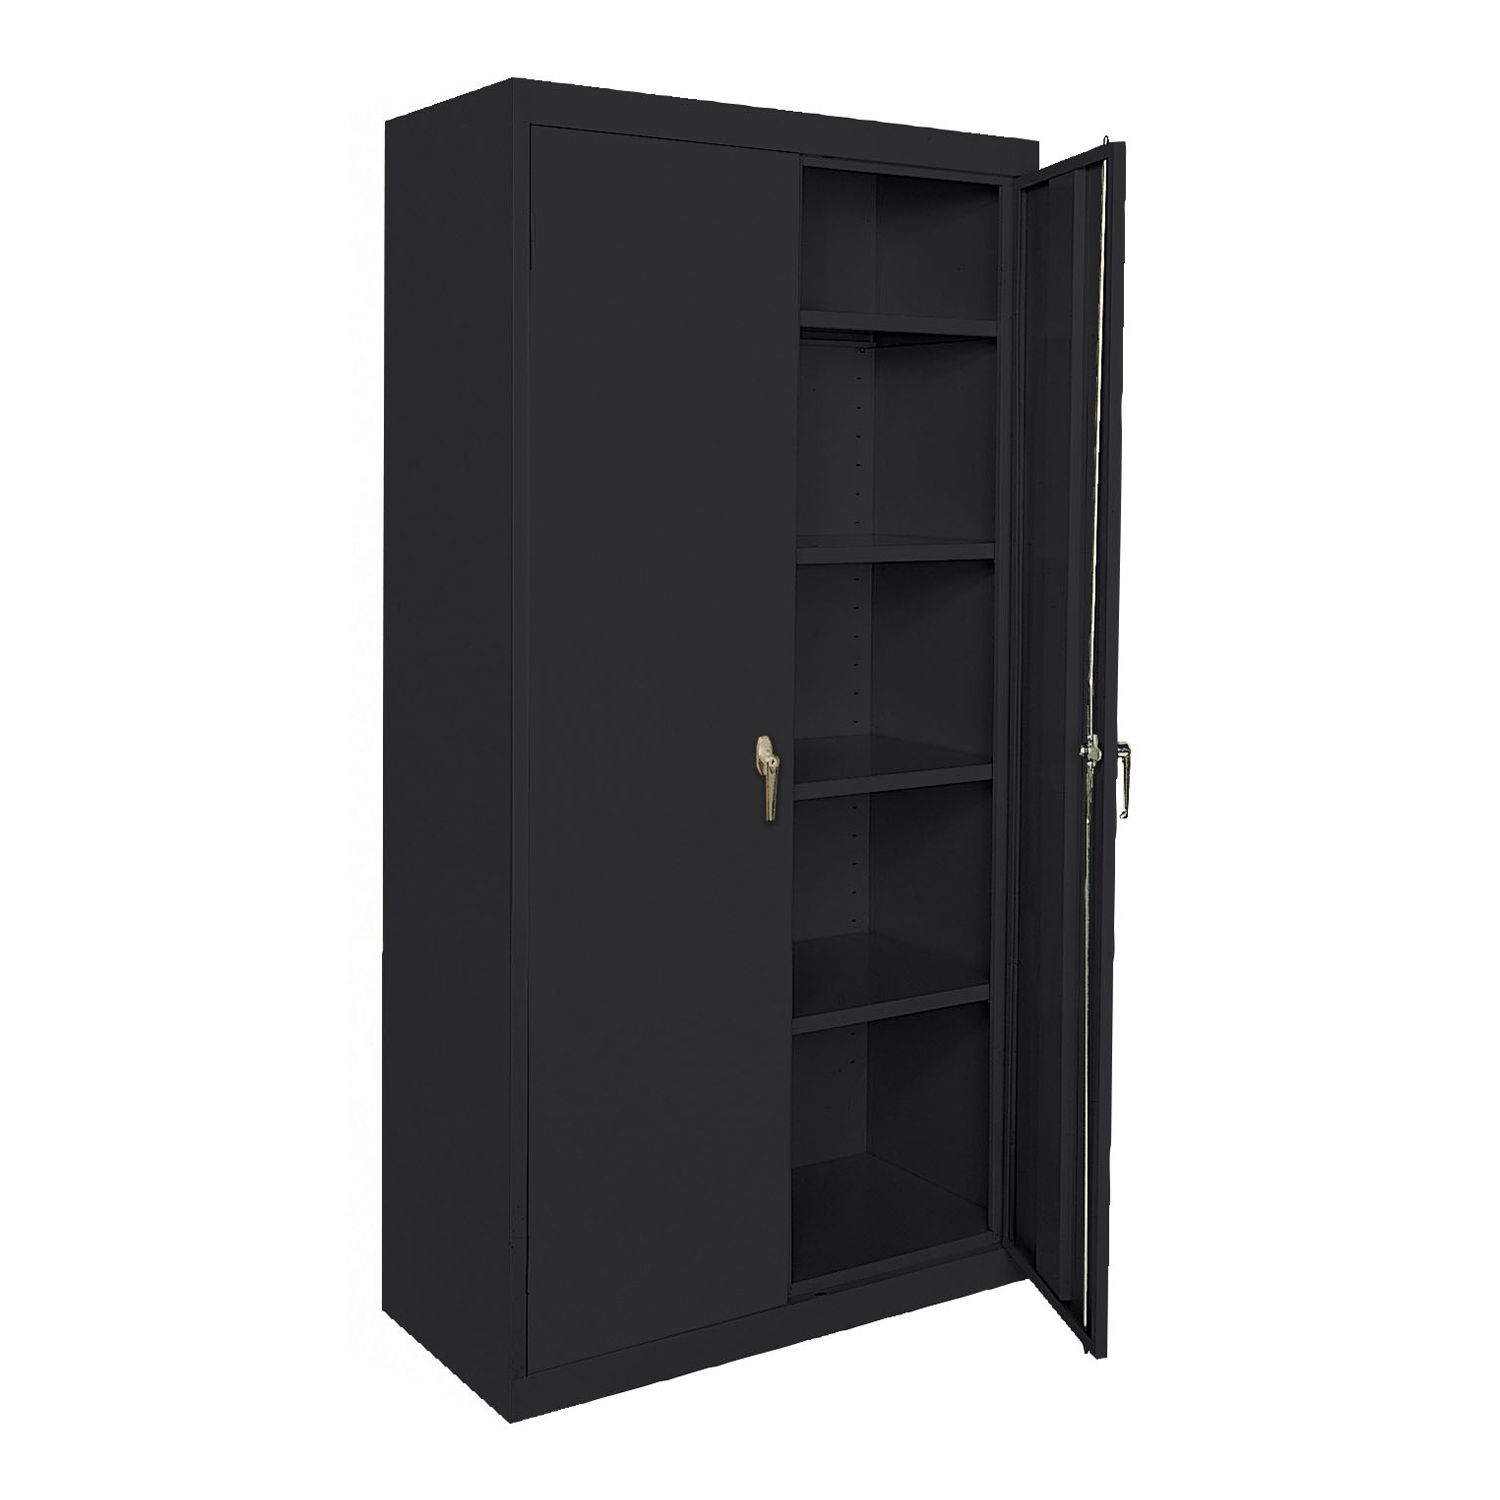 Metal Storage Cabinet With Doors